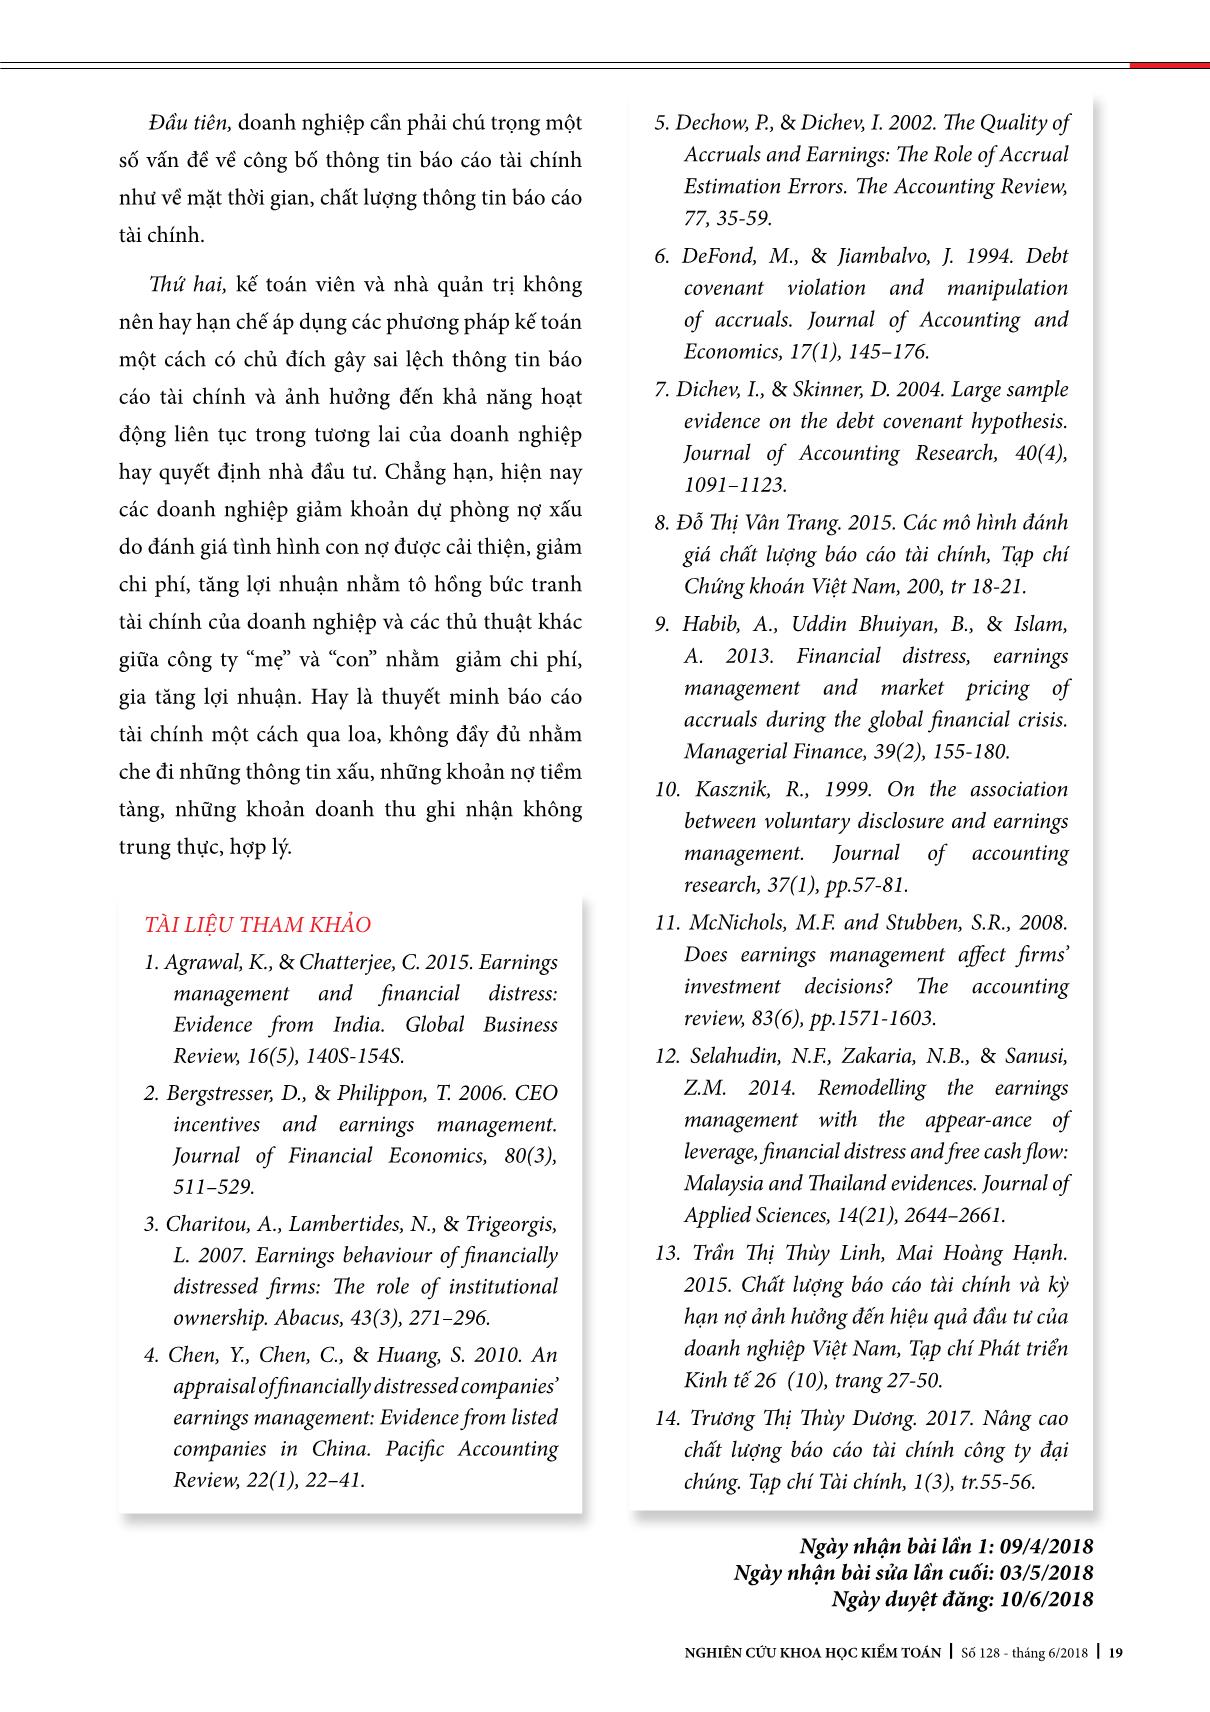 Các yếu tố ảnh hưởng đến chất lượng Báo cáo tài chính: Nghiên cứu thực nghiệm tại Việt Nam trang 7